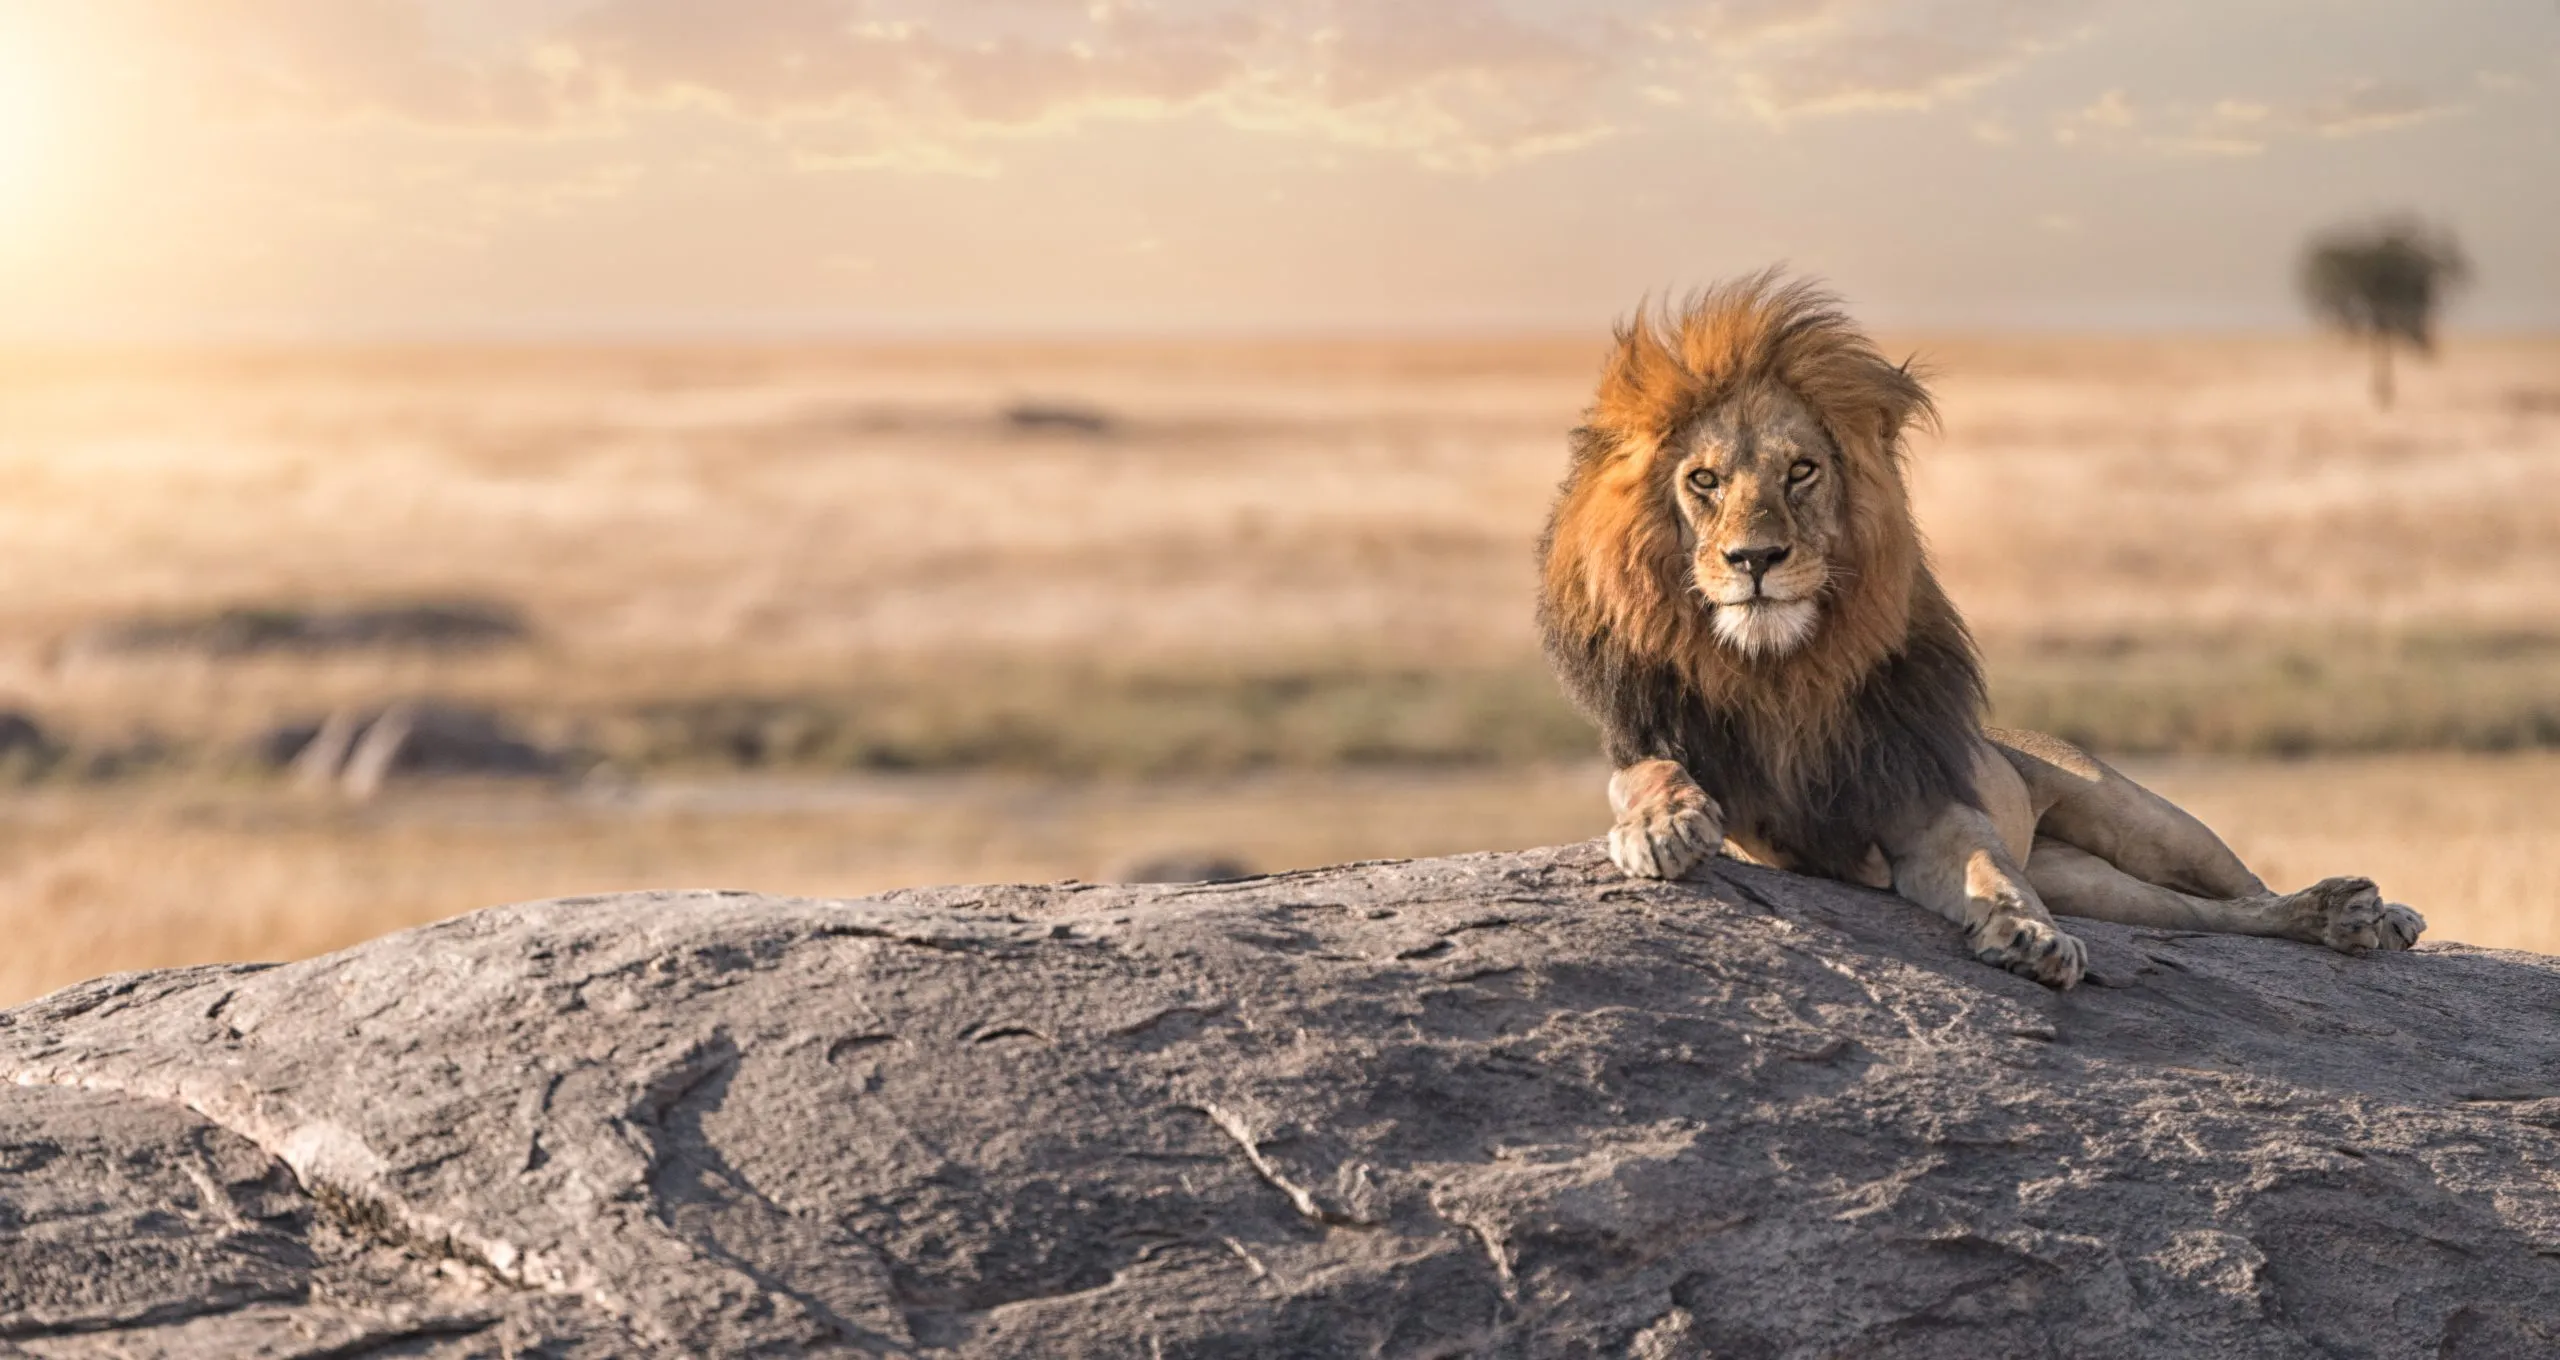 Urosleijona istuu kallion päällä Serengetin kansallispuistossa Tansaniassa.